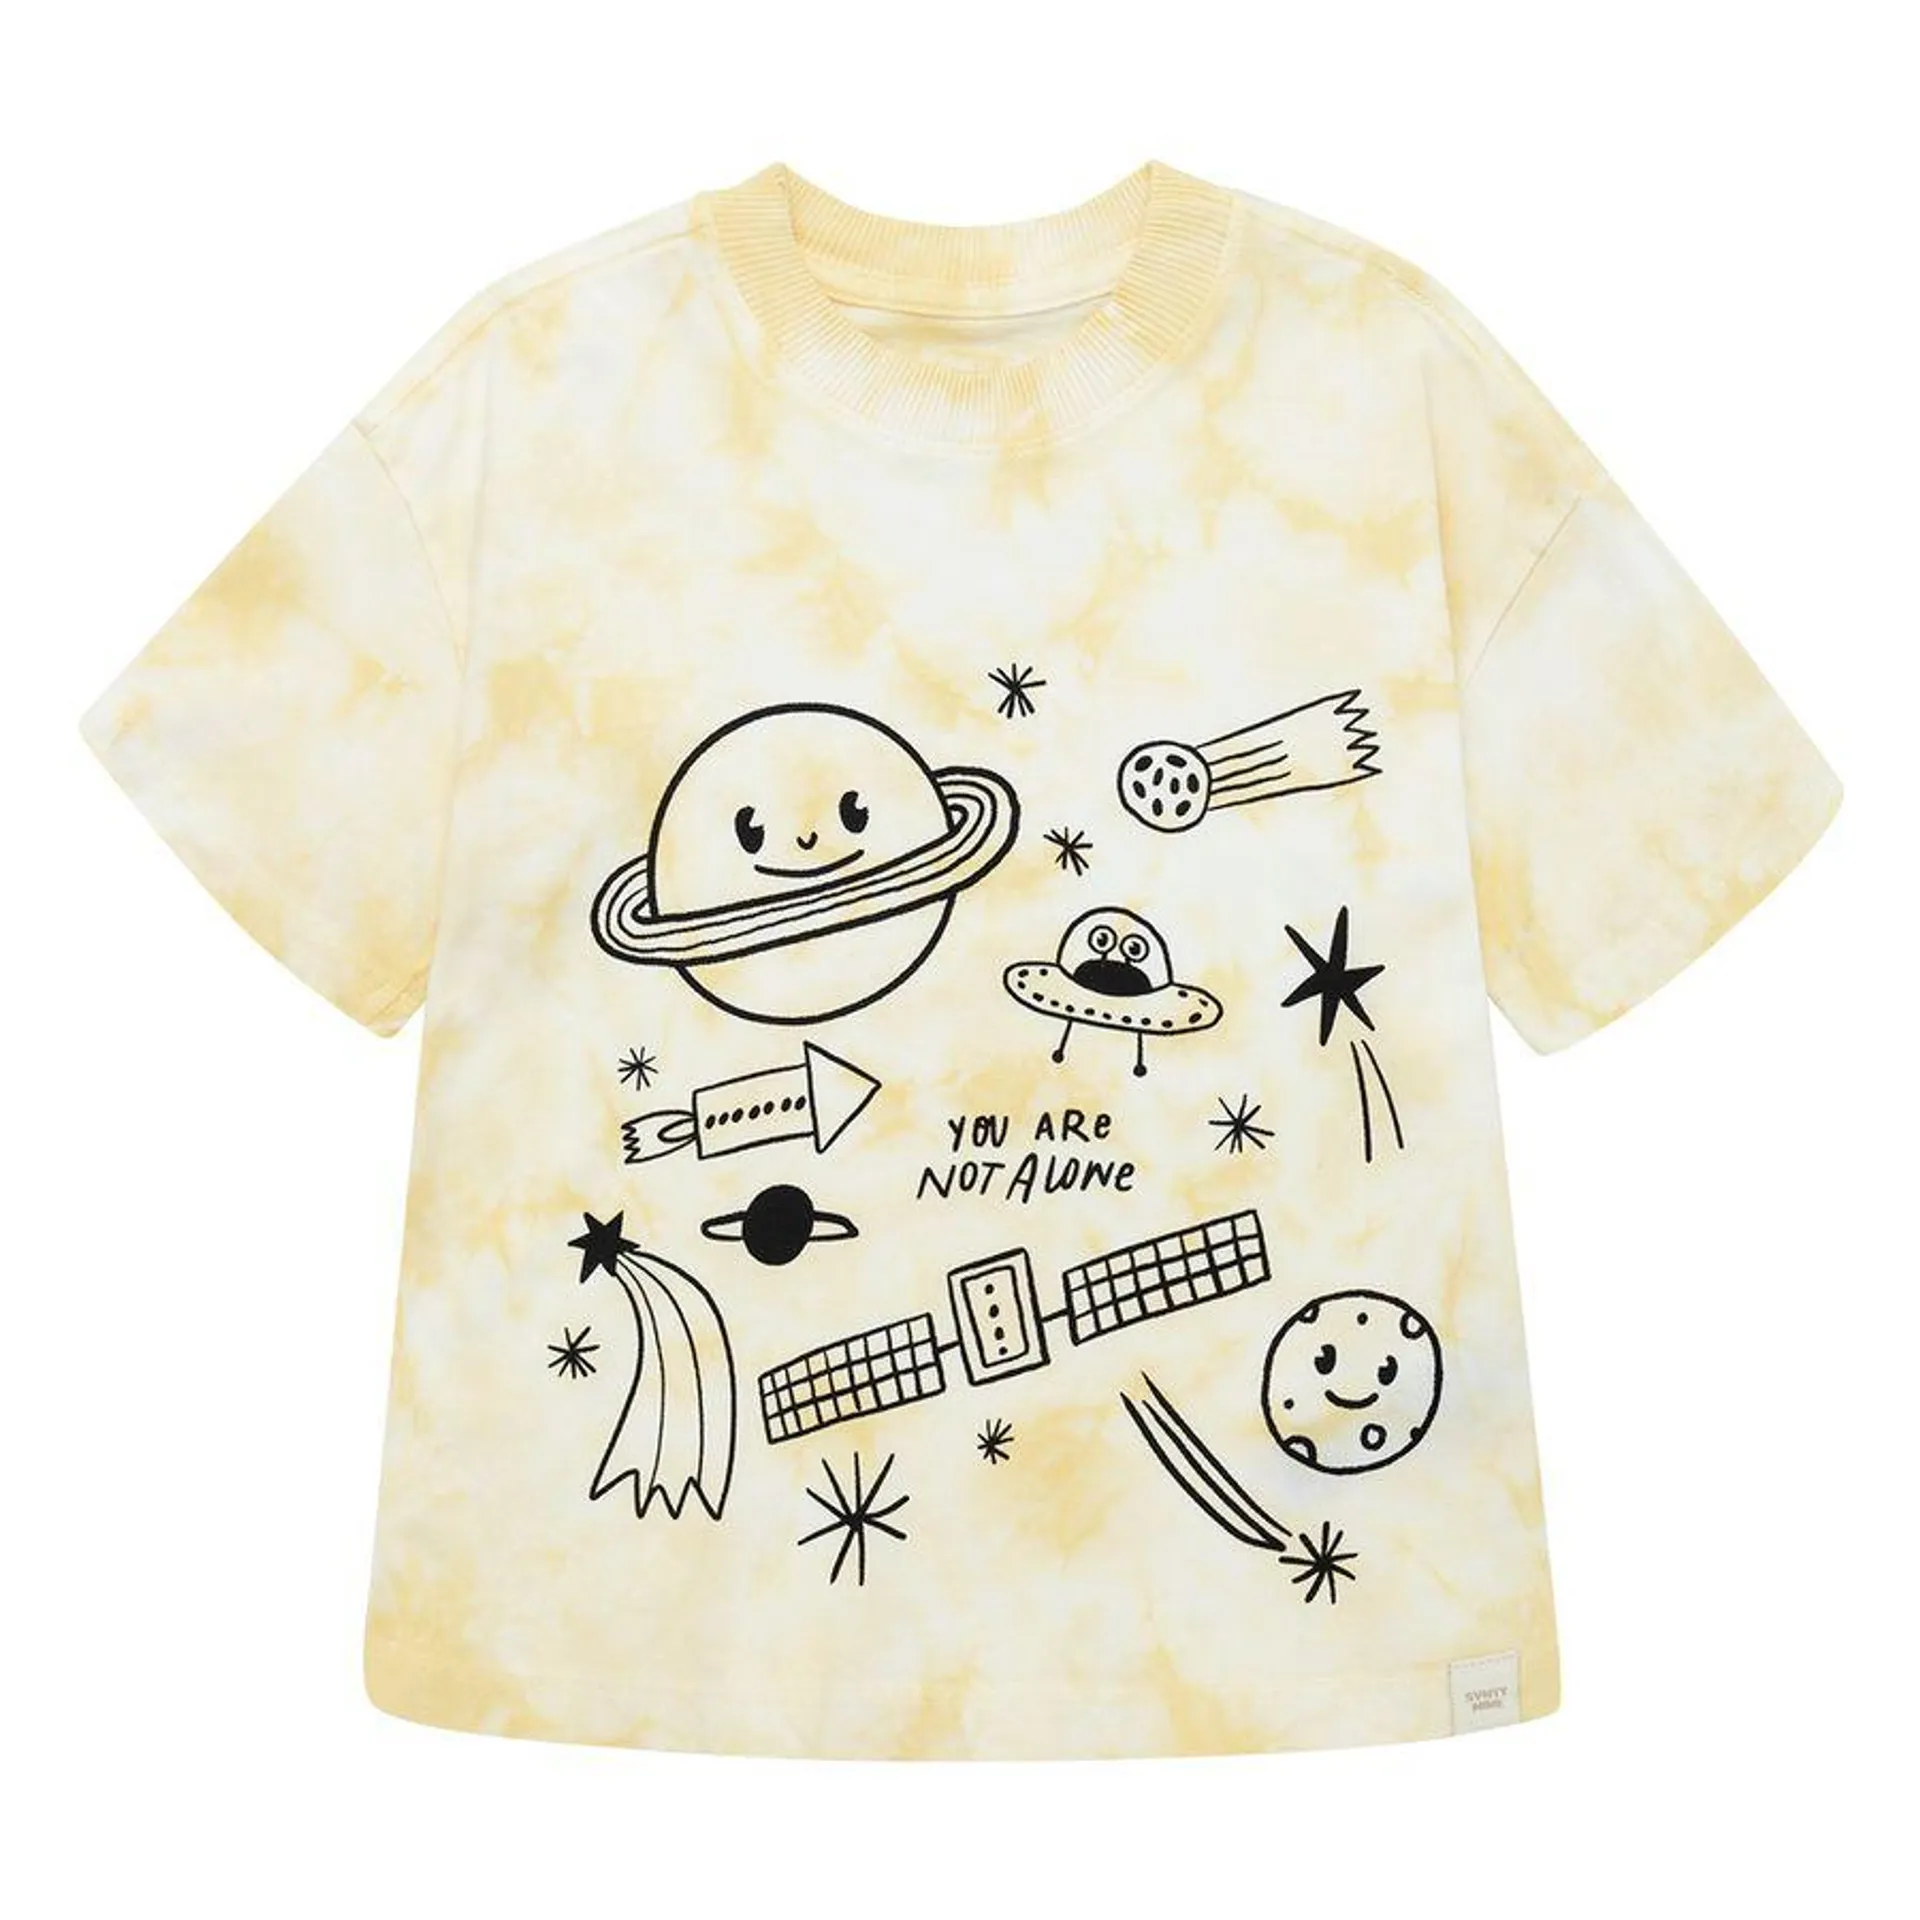 Camiseta manga corta silueta oversize para bebé niño - Amarillo 3T